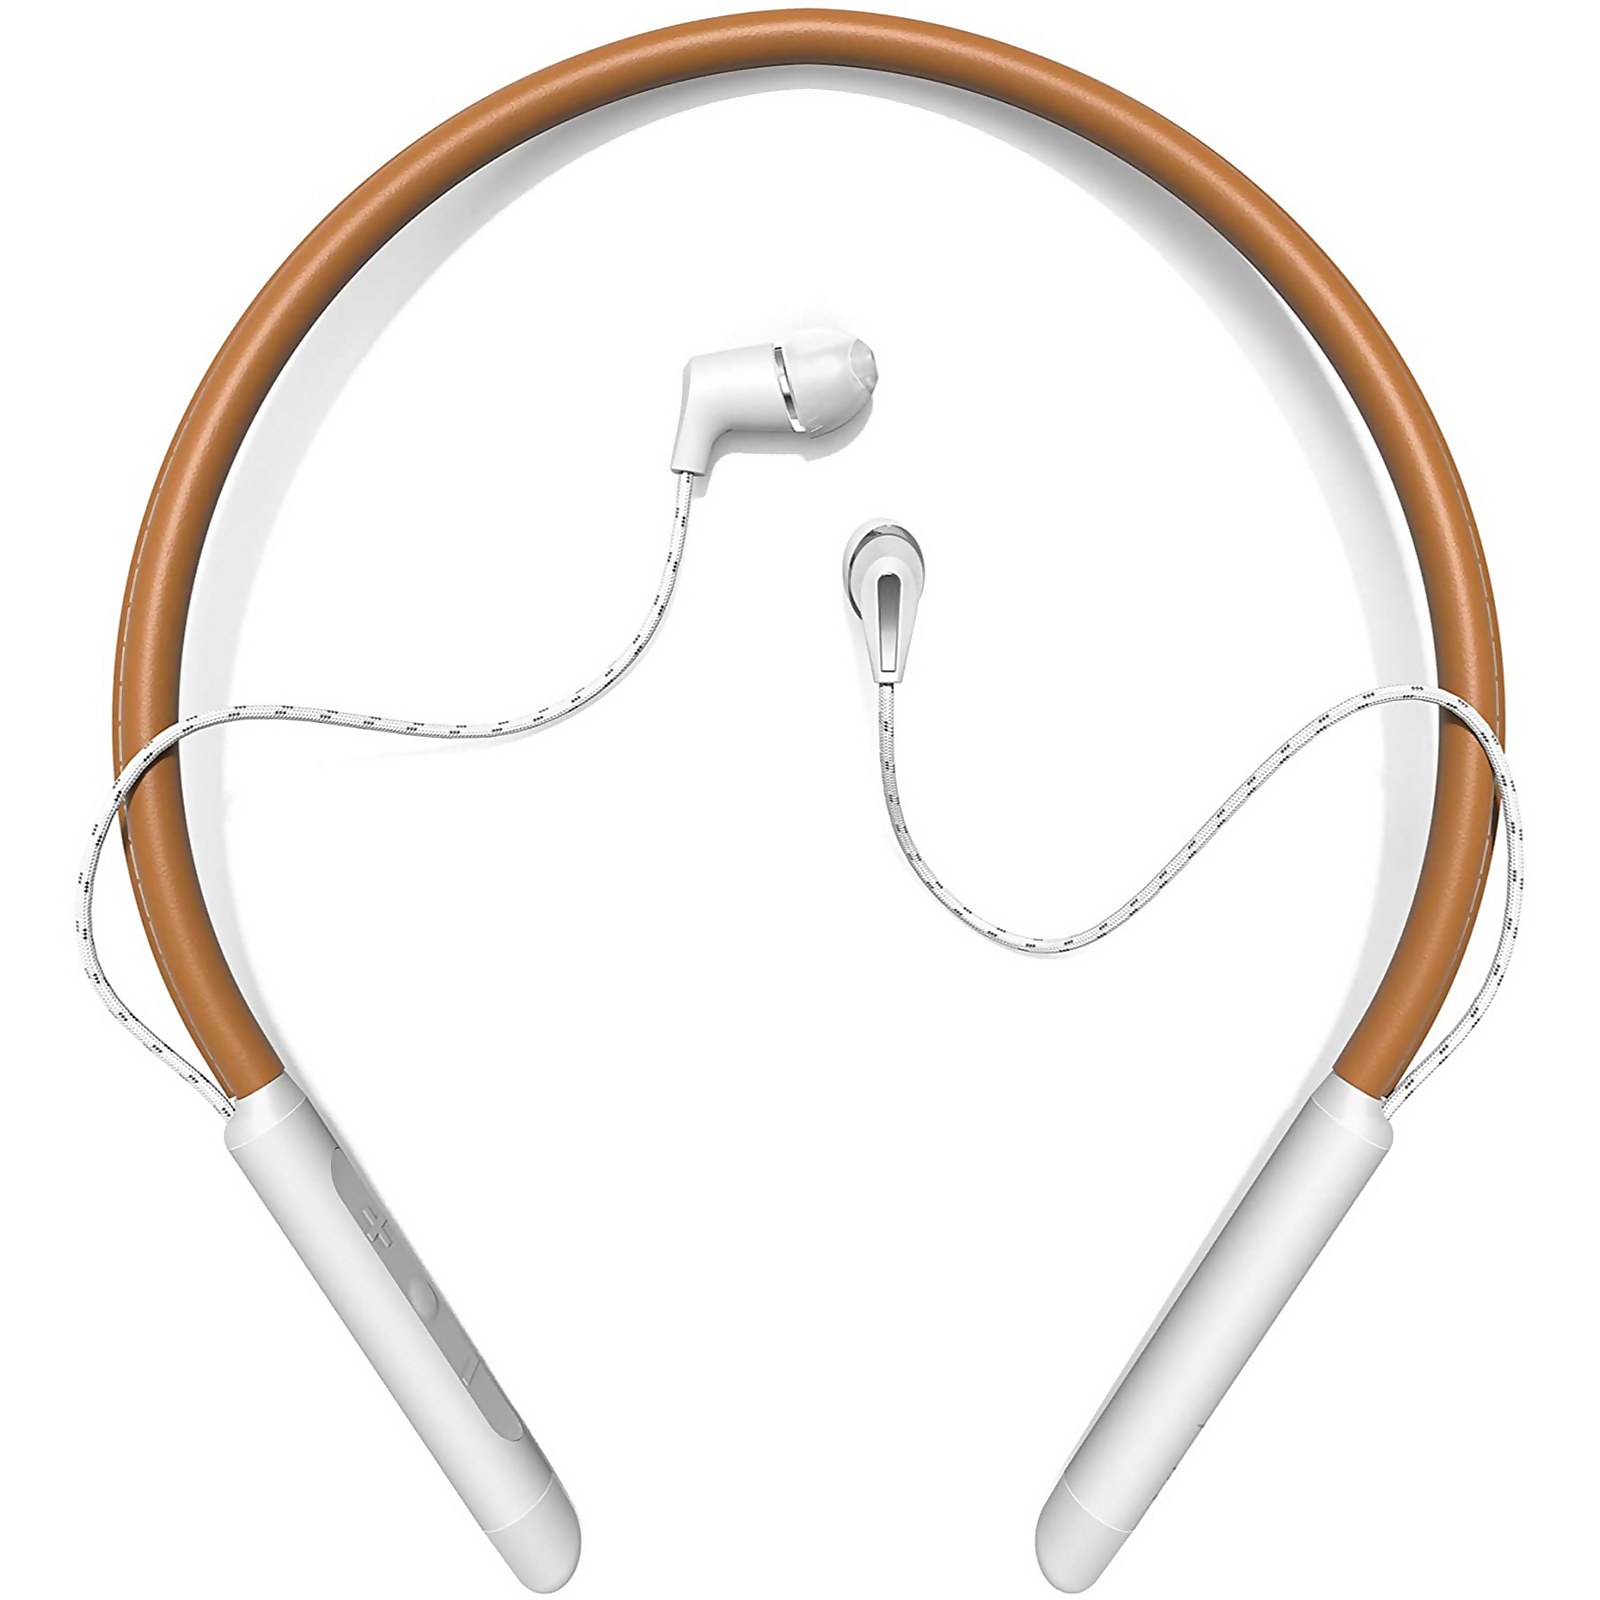 Klipsch T5 Wireless In-Ear Neckband In-Ear Headphones - Brown Leather & Silver